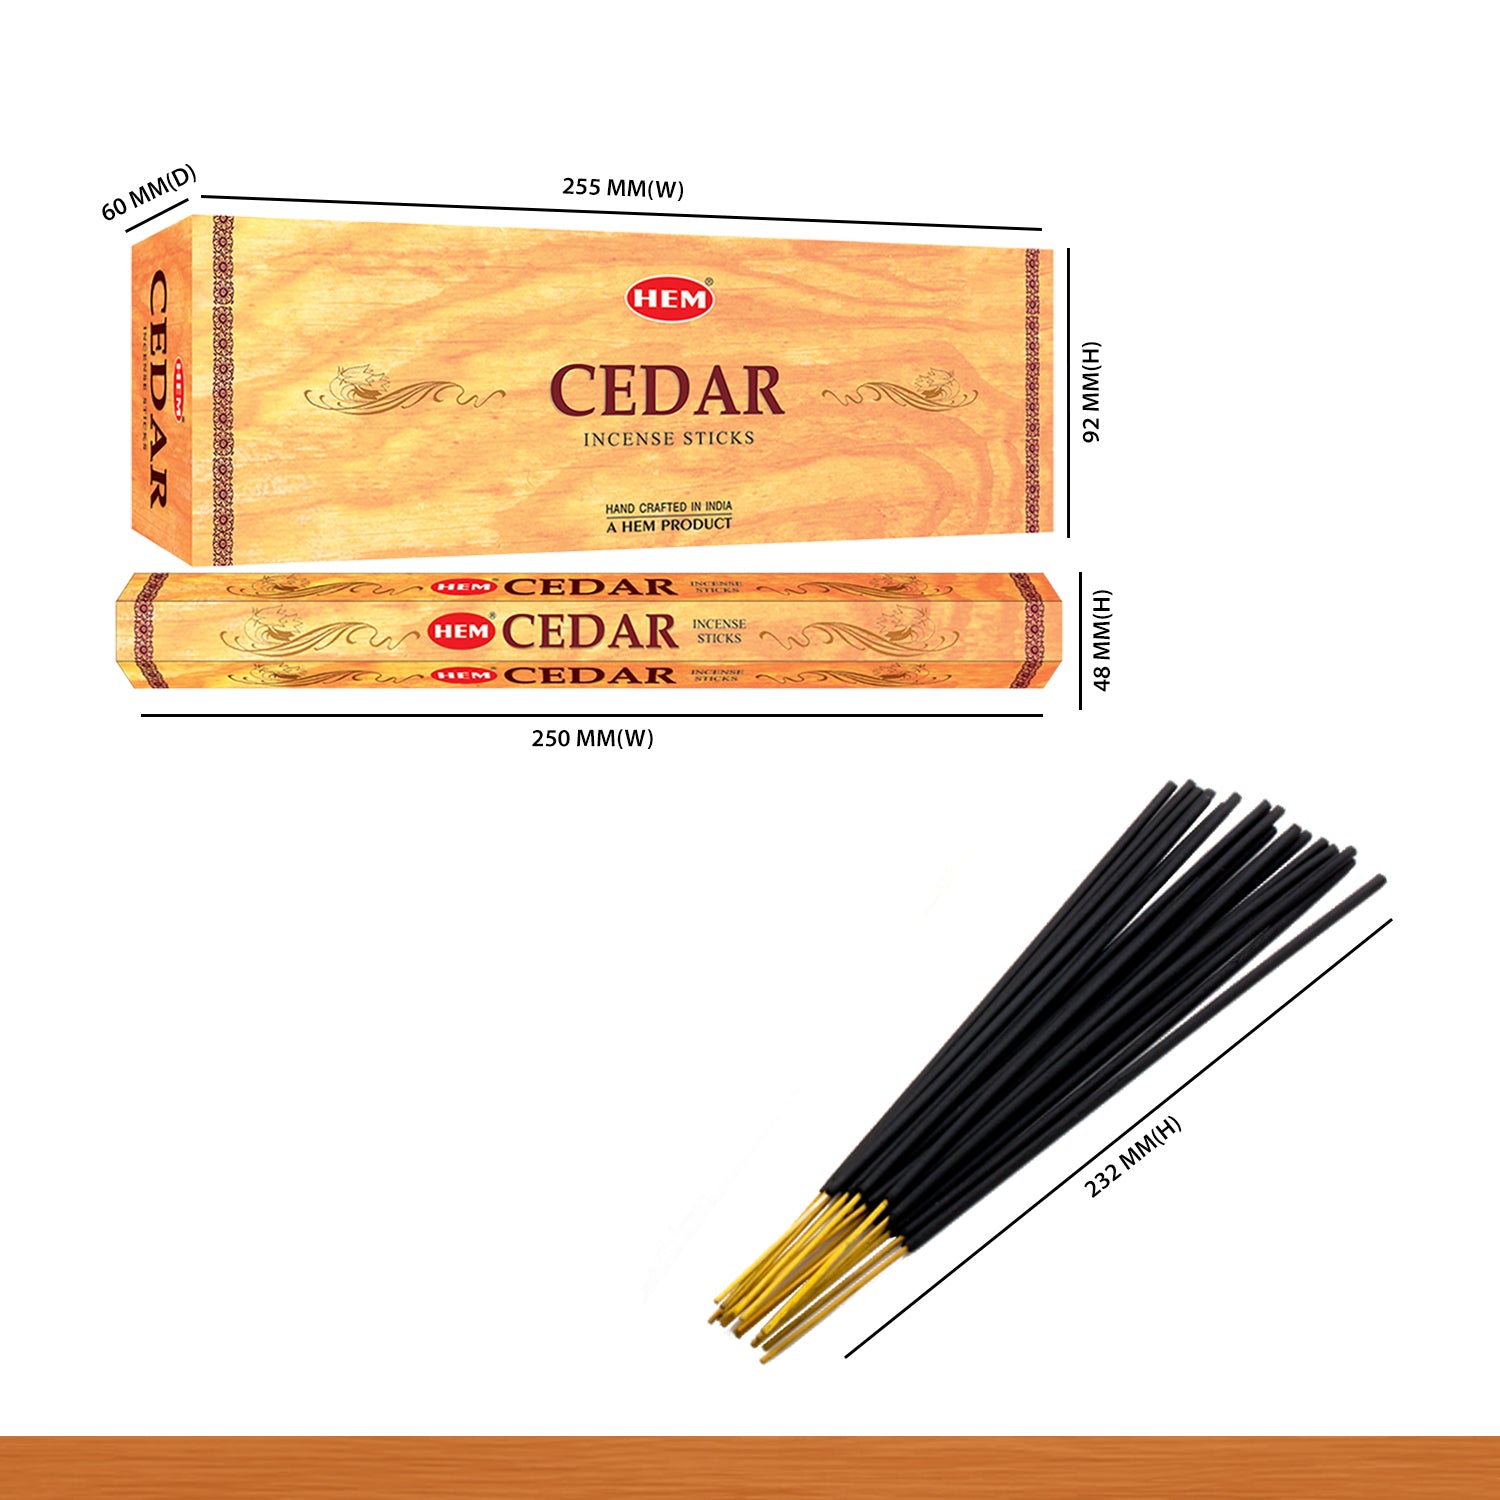 cedar-incense-sticks-size